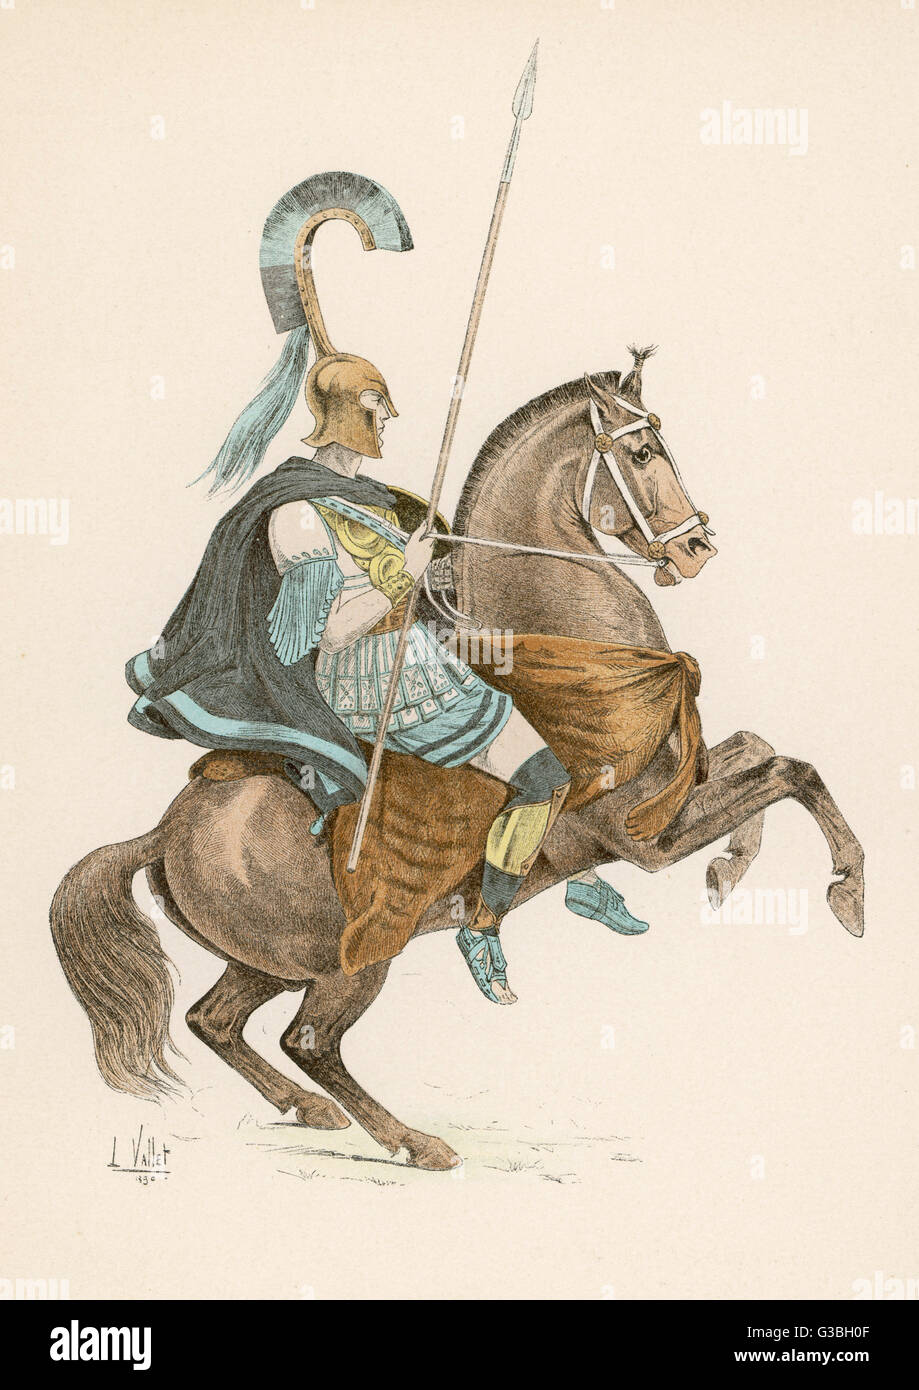 Un cavallo-guerriero della Grecia antica, utilizzando un animale-pelle come sella, e senza staffe. Data: circa 350 A.C. Foto Stock